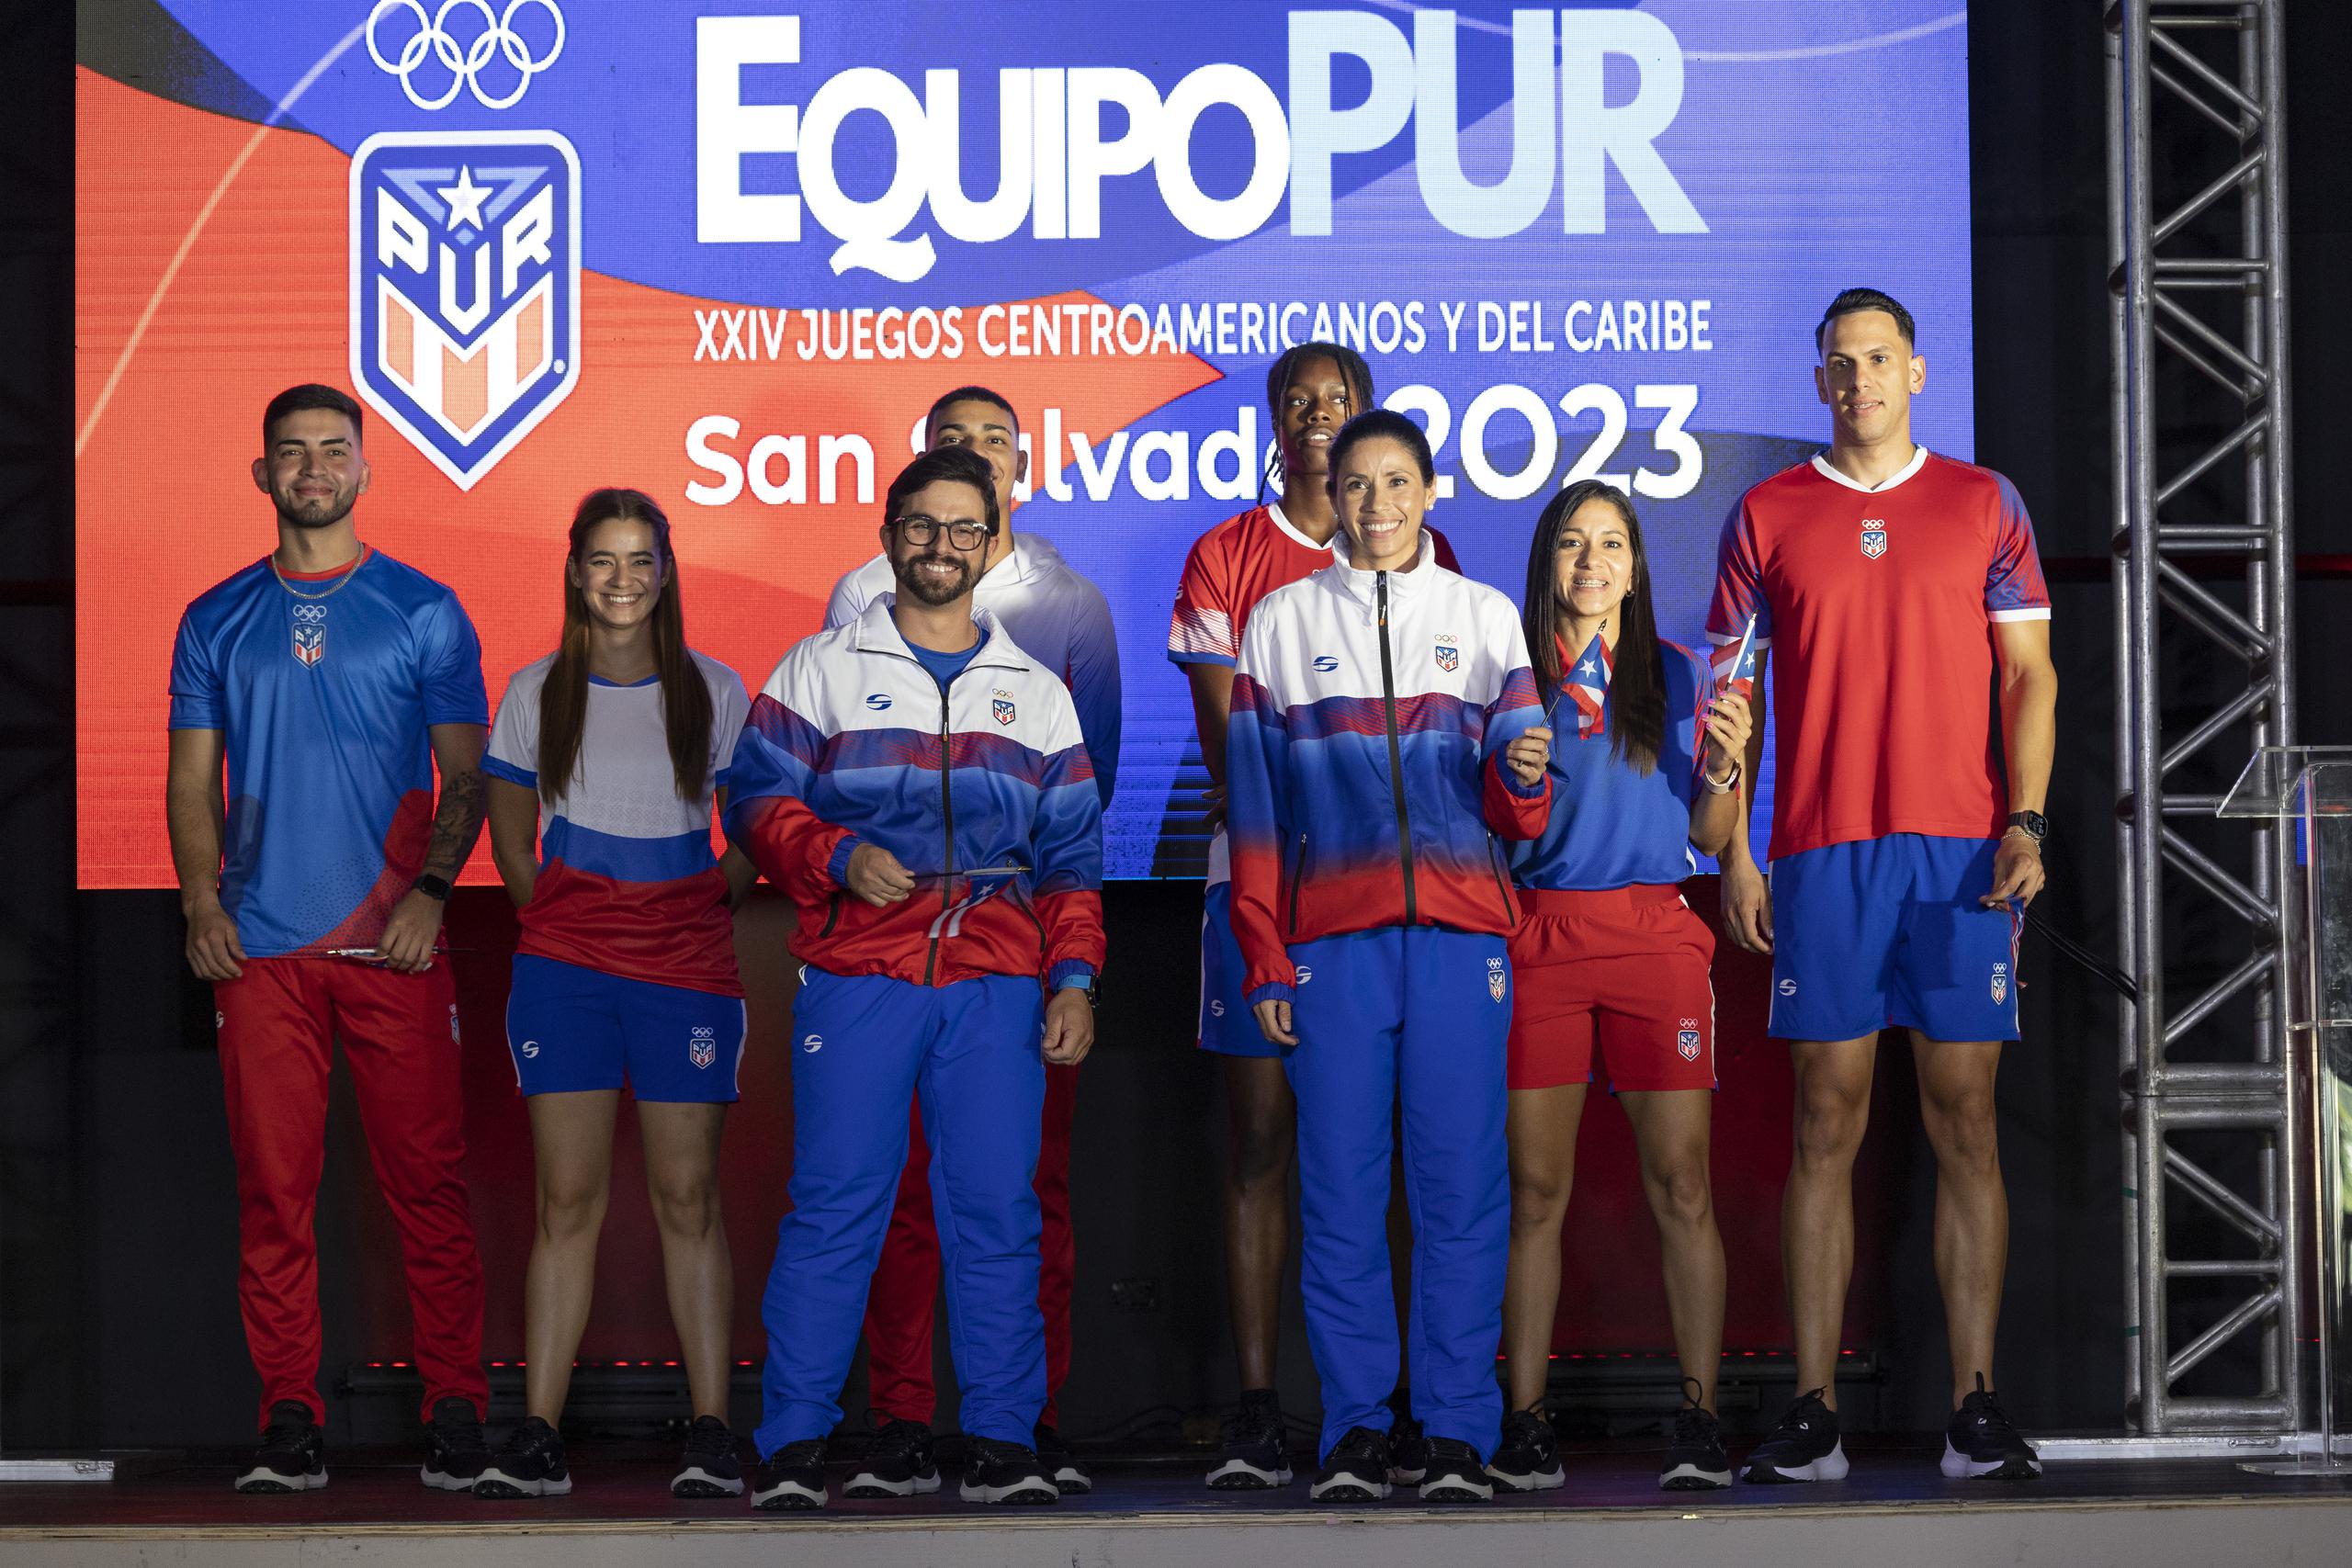 Varios atletas de Puerto Rico, incluyendo los abanderados Raúl Ríos y Beverly Ramos, muestras algunas de las indumentarias que vestirán en los Juegos Centroamericanos y del Caribe en San Salvador.